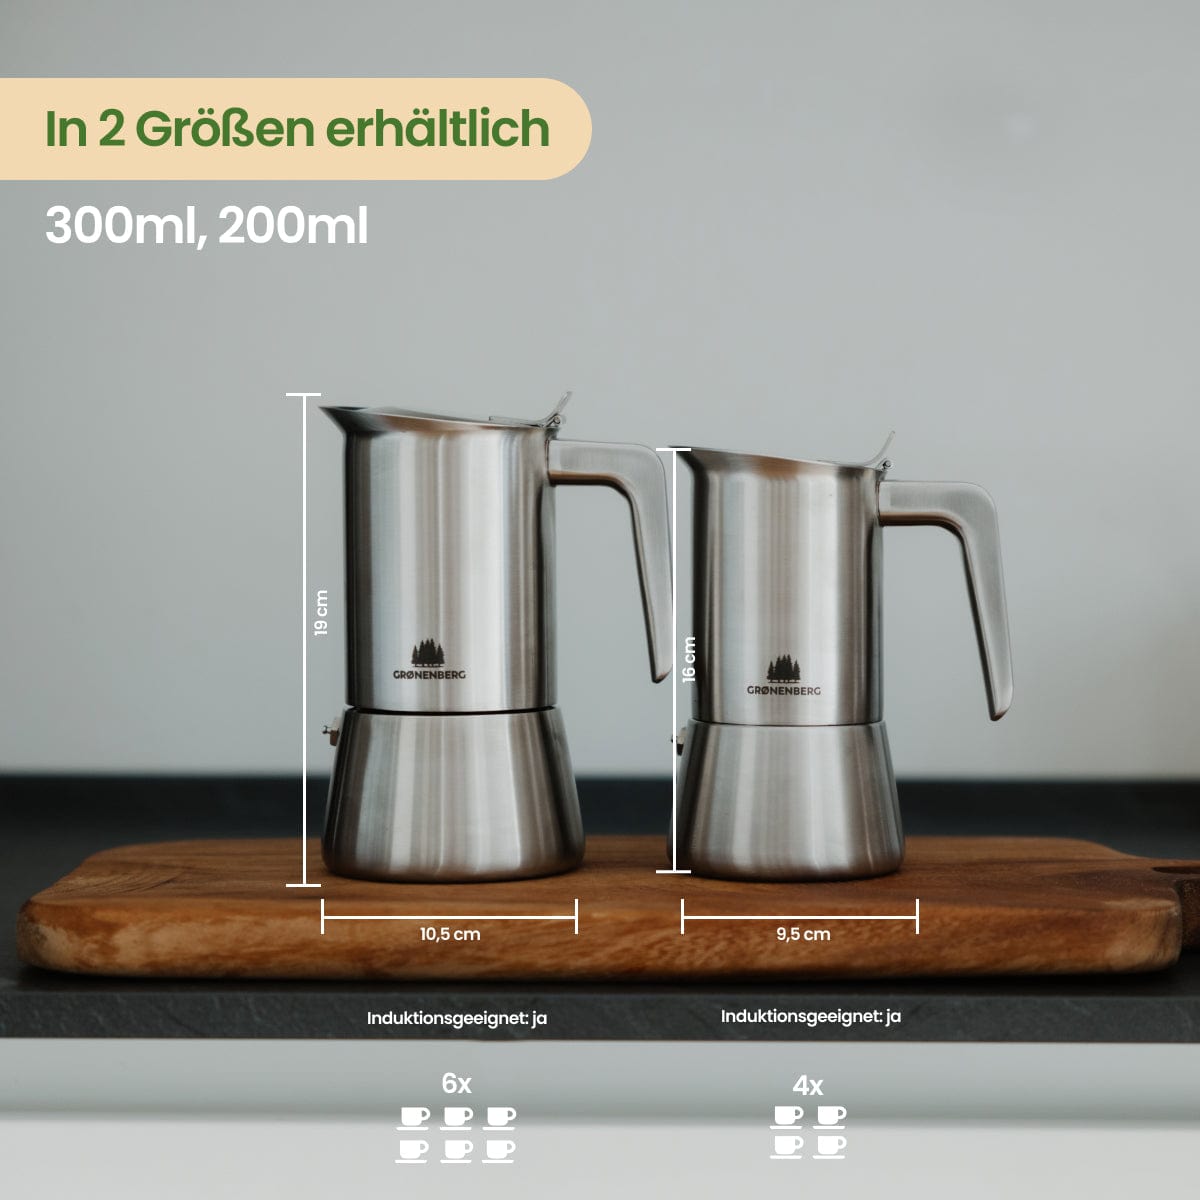 Espressokocher Edelstahl 4 oder 6 Tassen (200-300ml) | Induktion